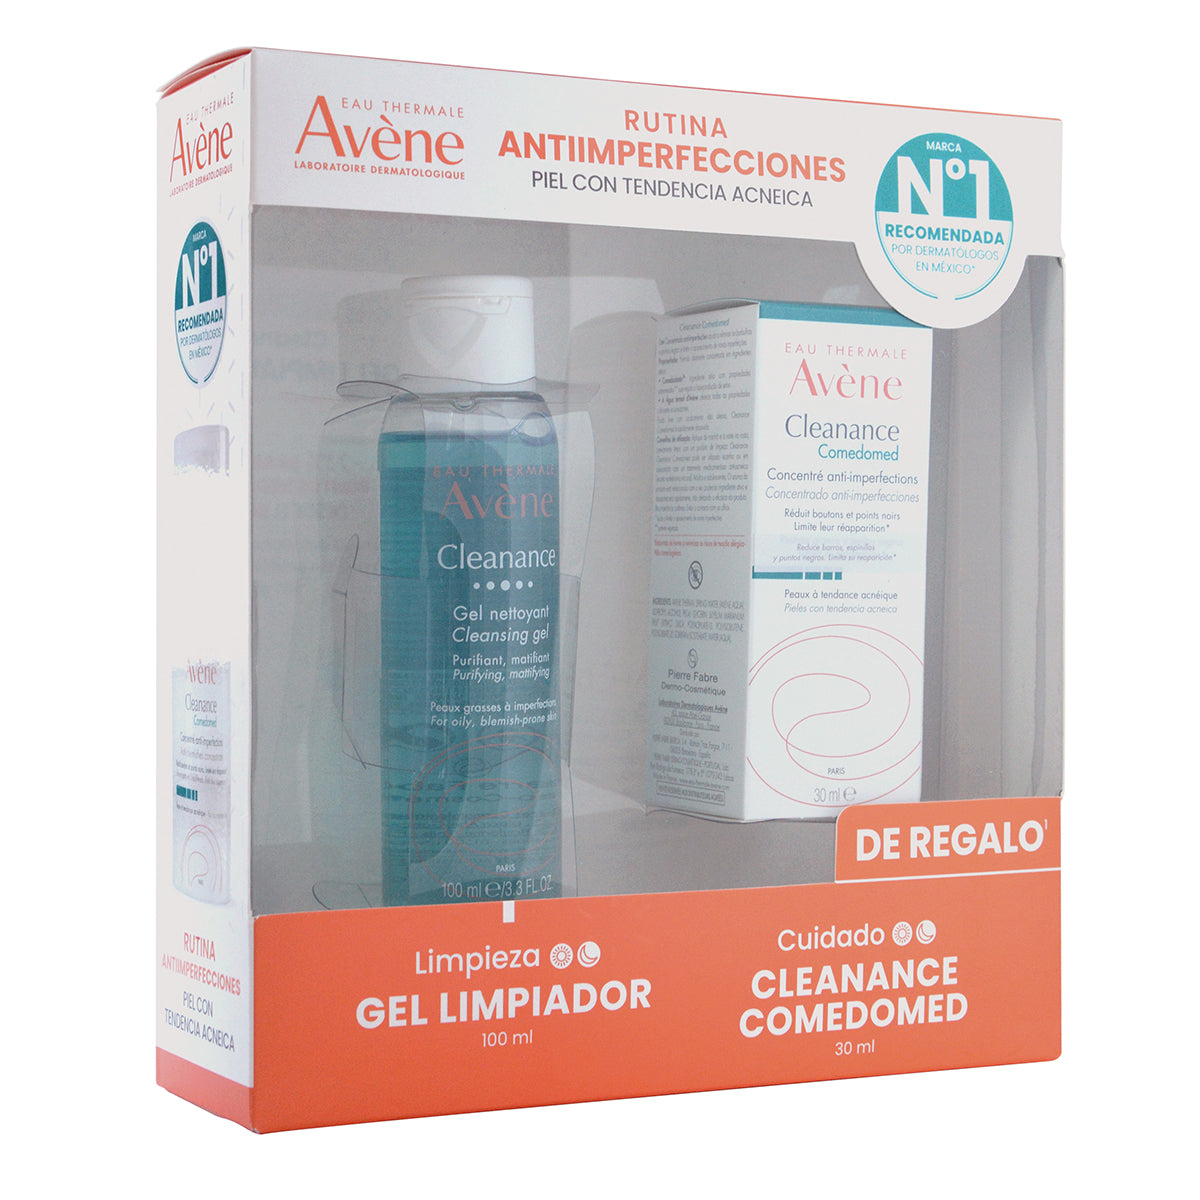 Avene Kit-cleanance comedomed 30ml + Cleanance gel 100ml.